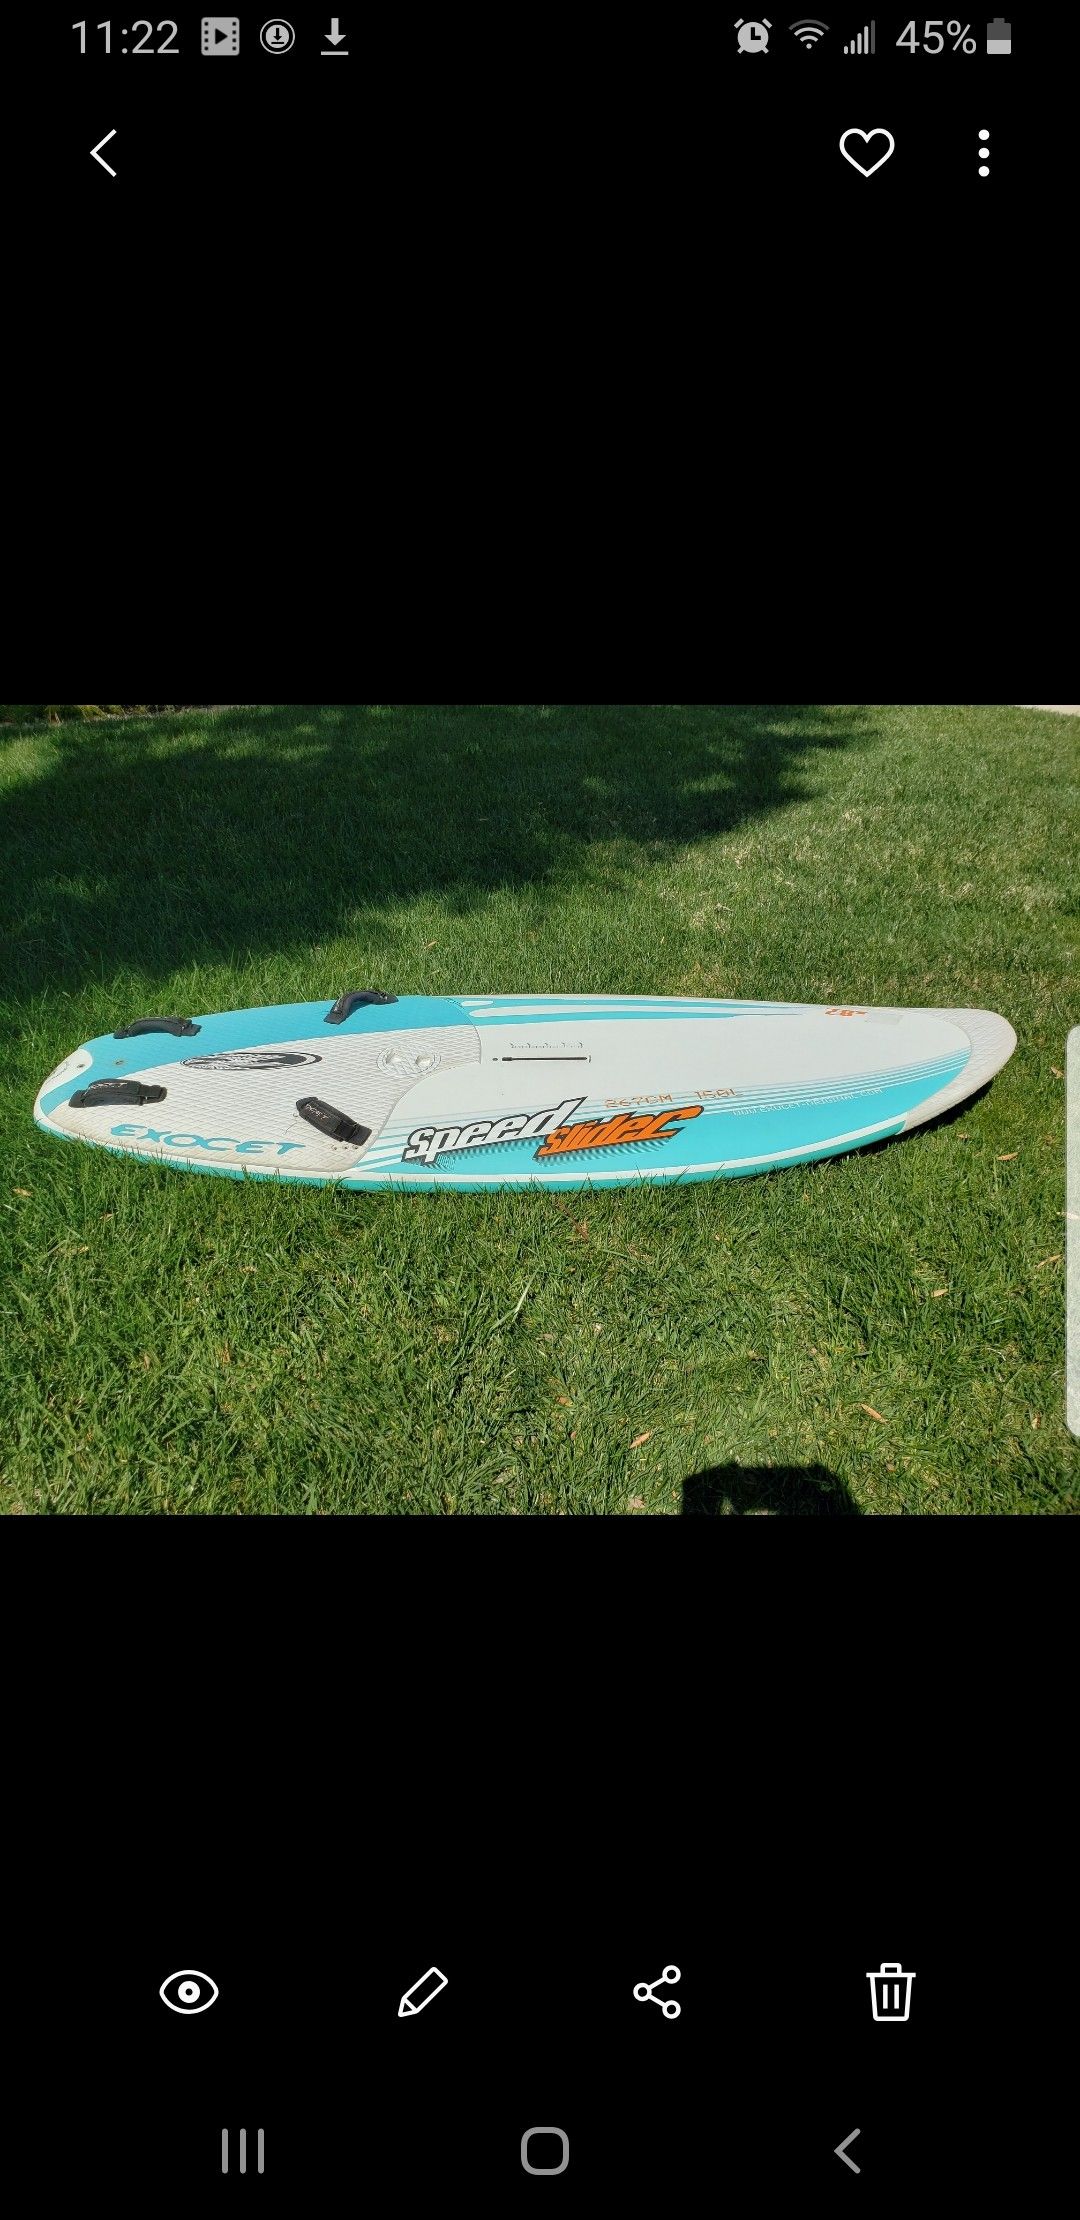 Exocet Speed Slider 167 cm 150 L windsurf board. Comes with bag.